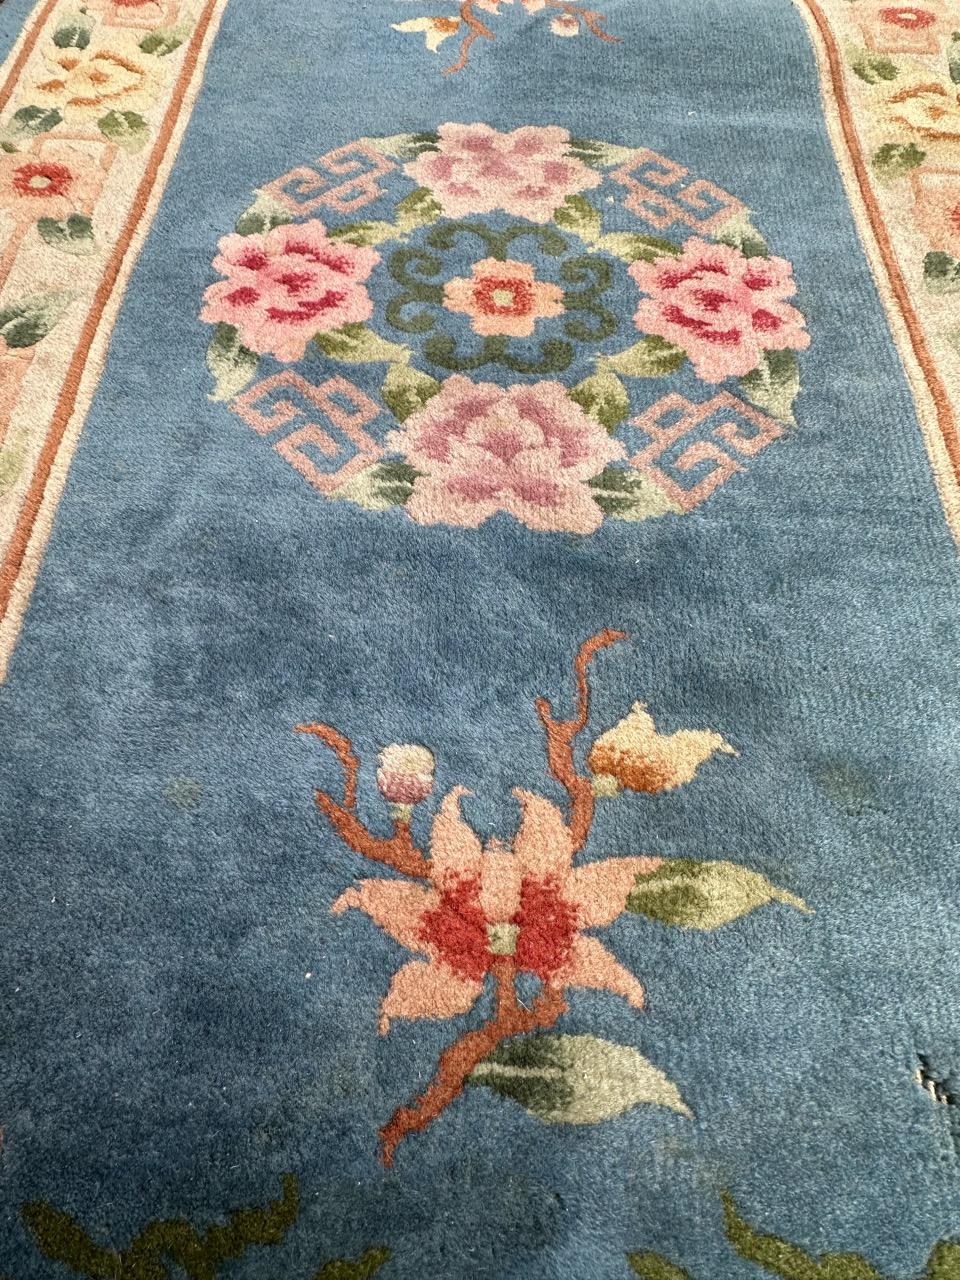 Joli tapis chinois du 20ème siècle avec un beau design floral chinois et de belles couleurs avec un champ bleu ciel et des couleurs rose, orange, marron, violet, vert et blanc dans le design et les bordures. Entièrement noué à la main avec de la